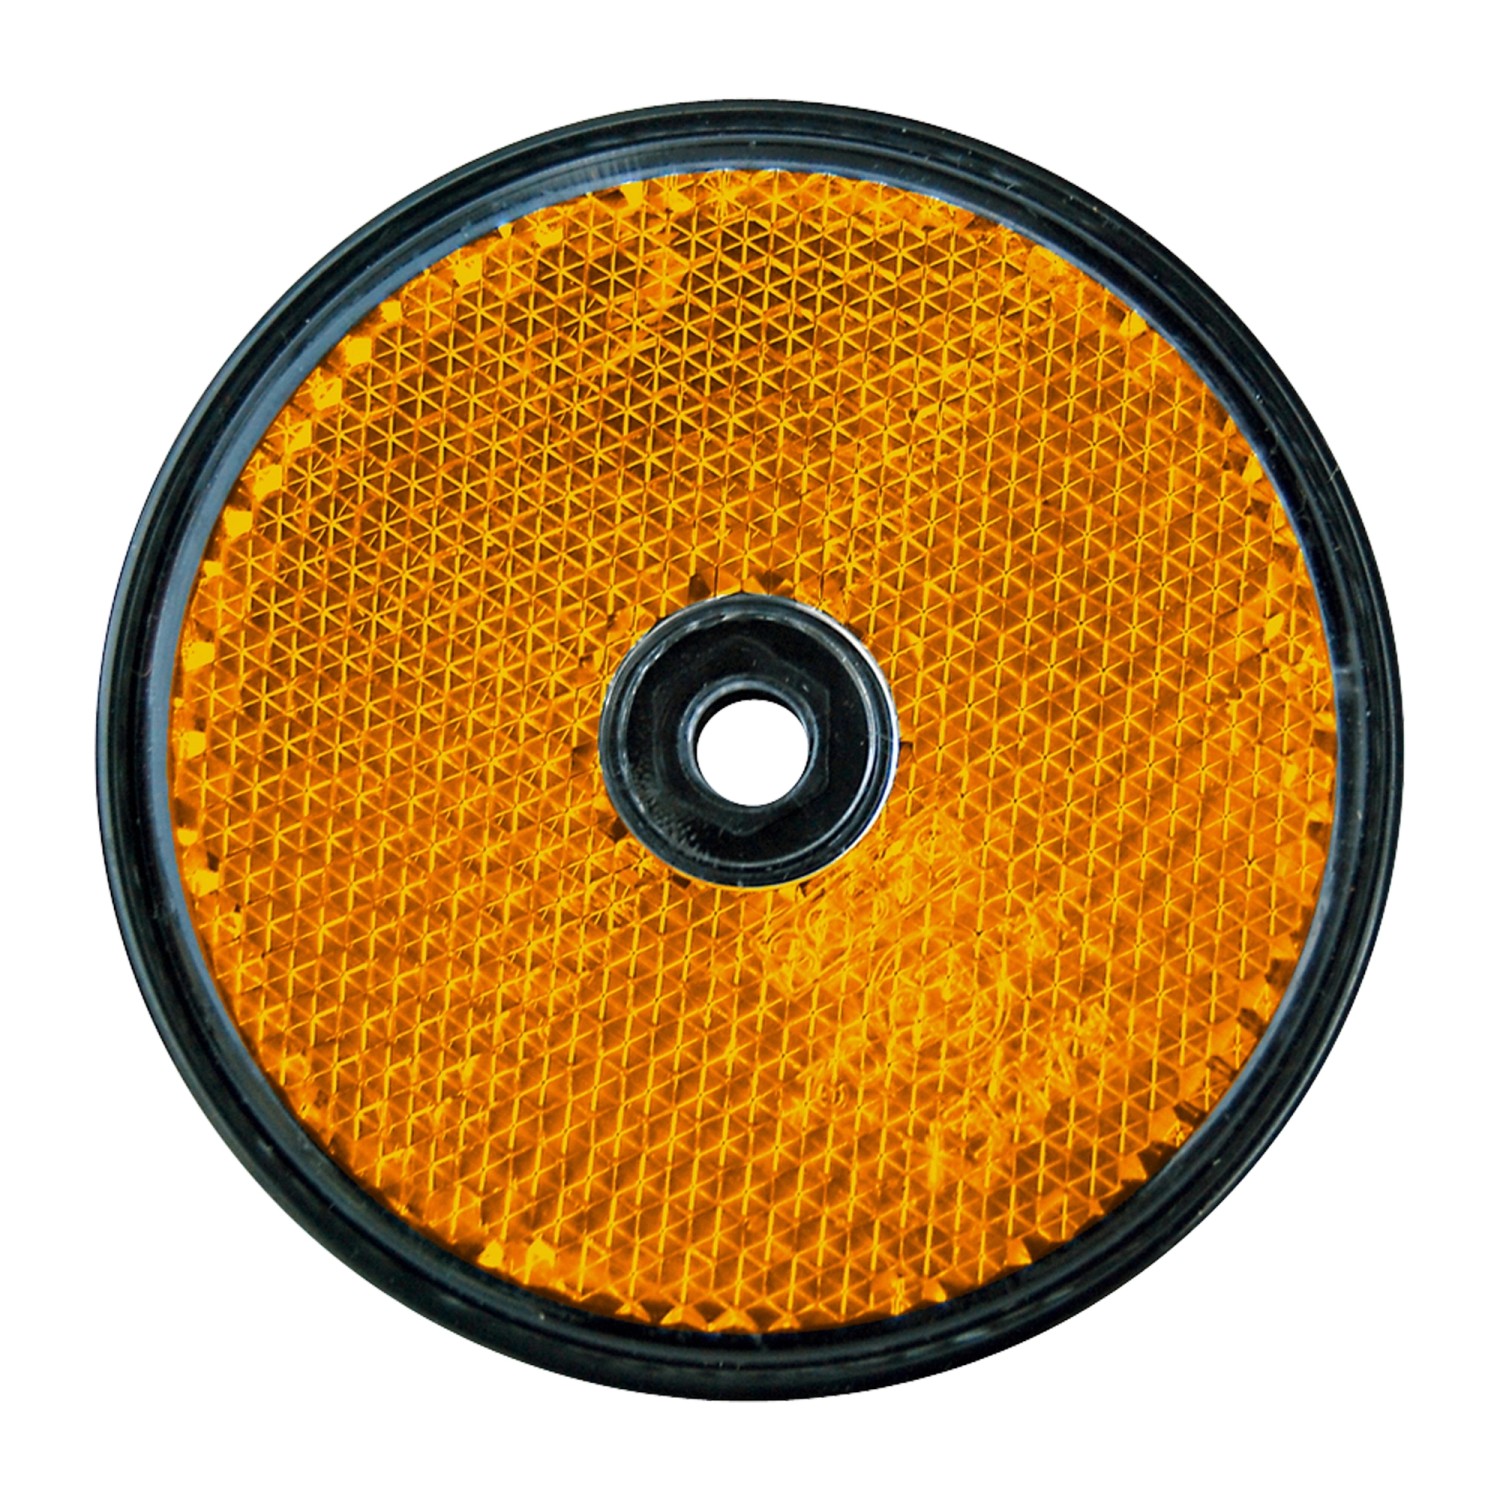 Las Runder Reflektor für PKW Anhänger 2 Stück Orange